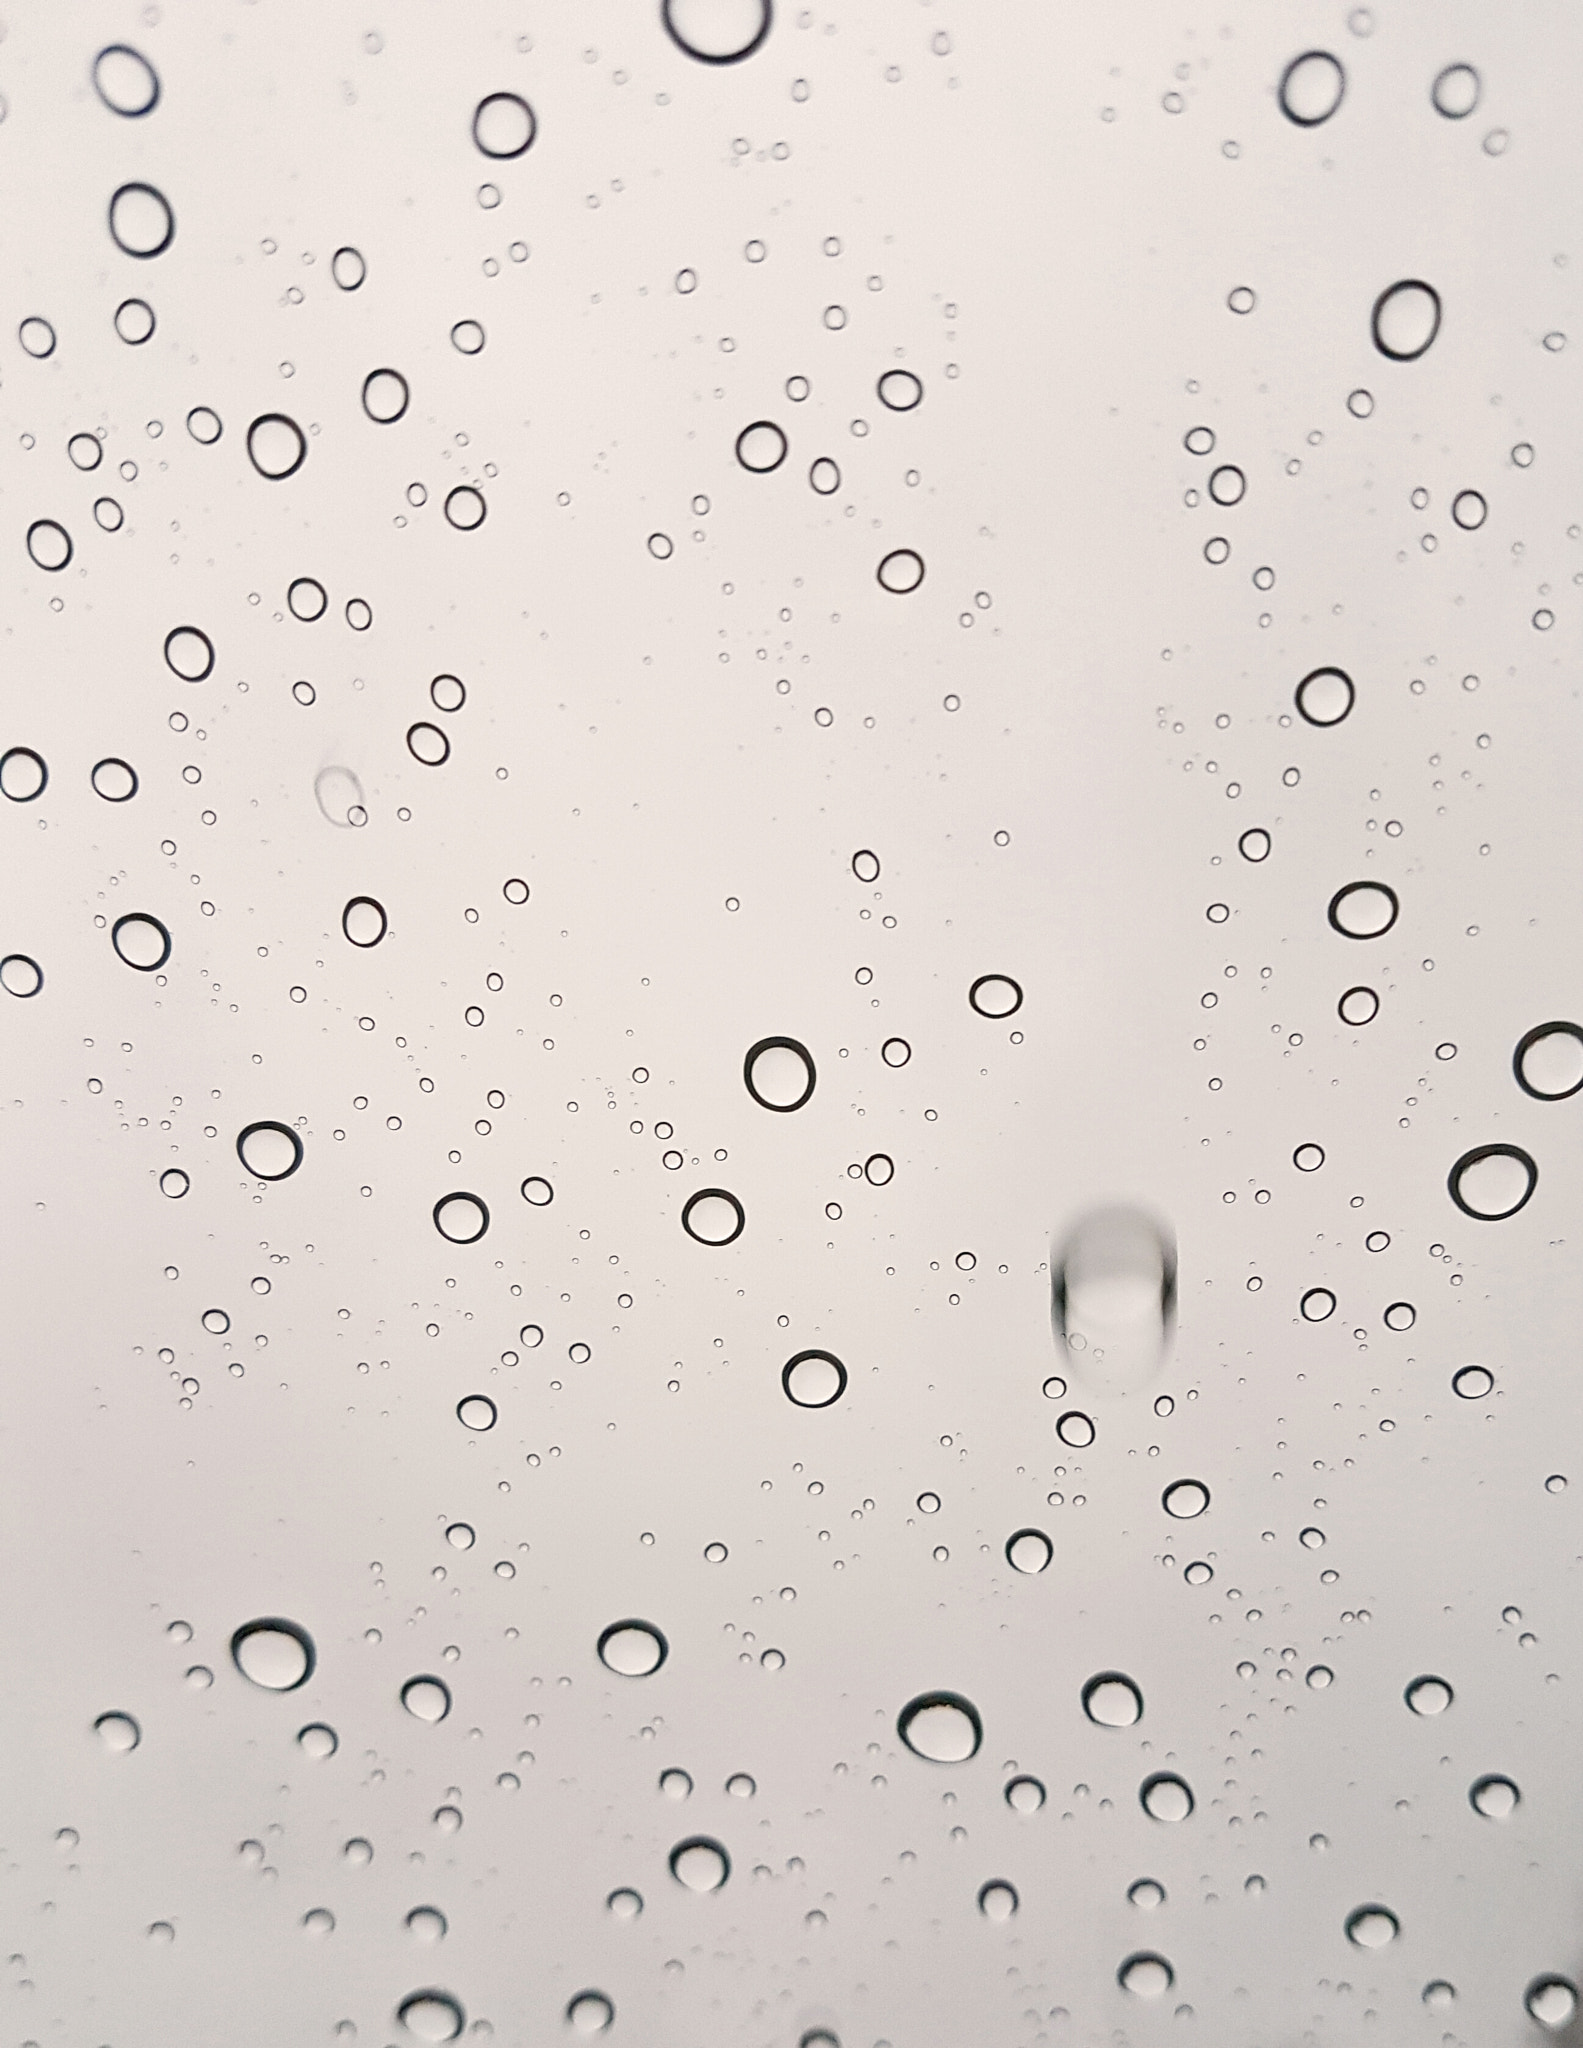 Samsung Galaxy S7 Rear Camera sample photo. Rainy day photography